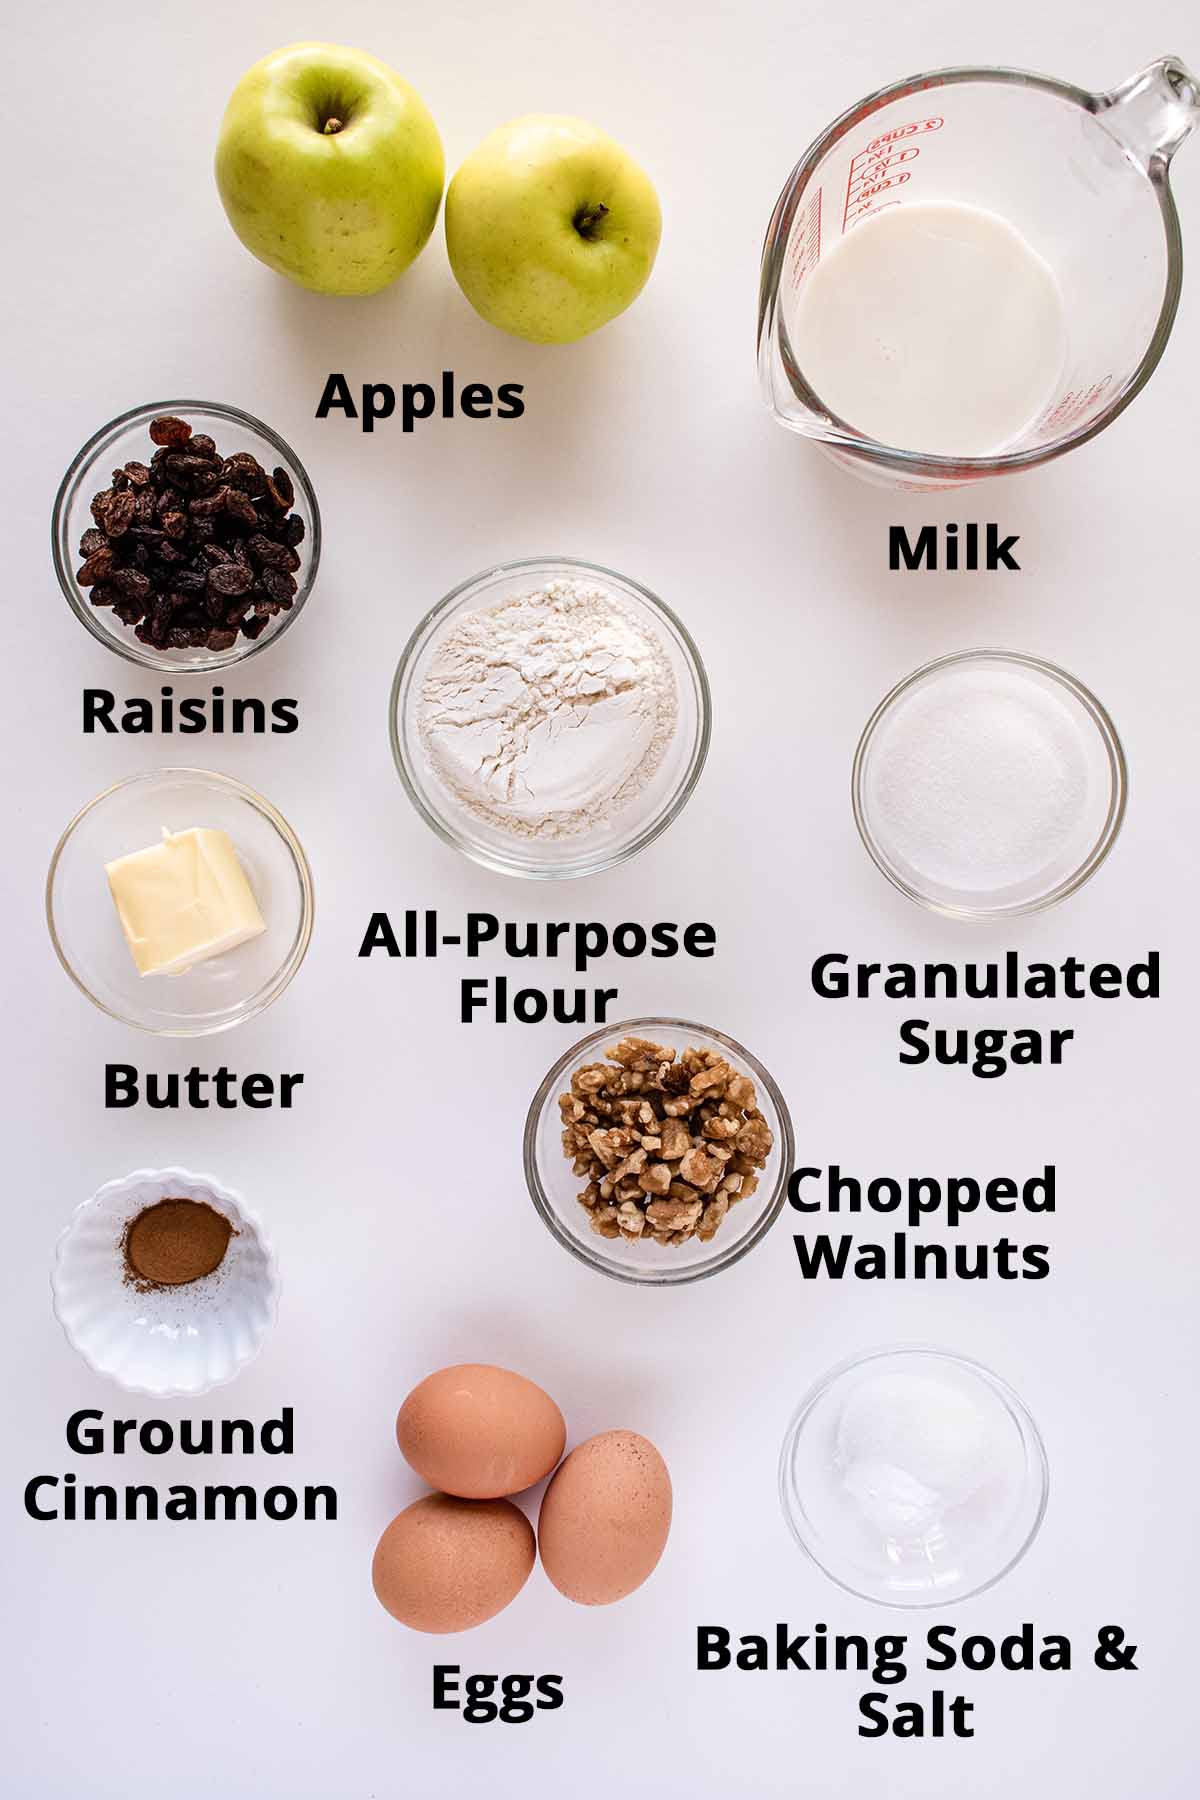 Apple breakfast bake ingredients